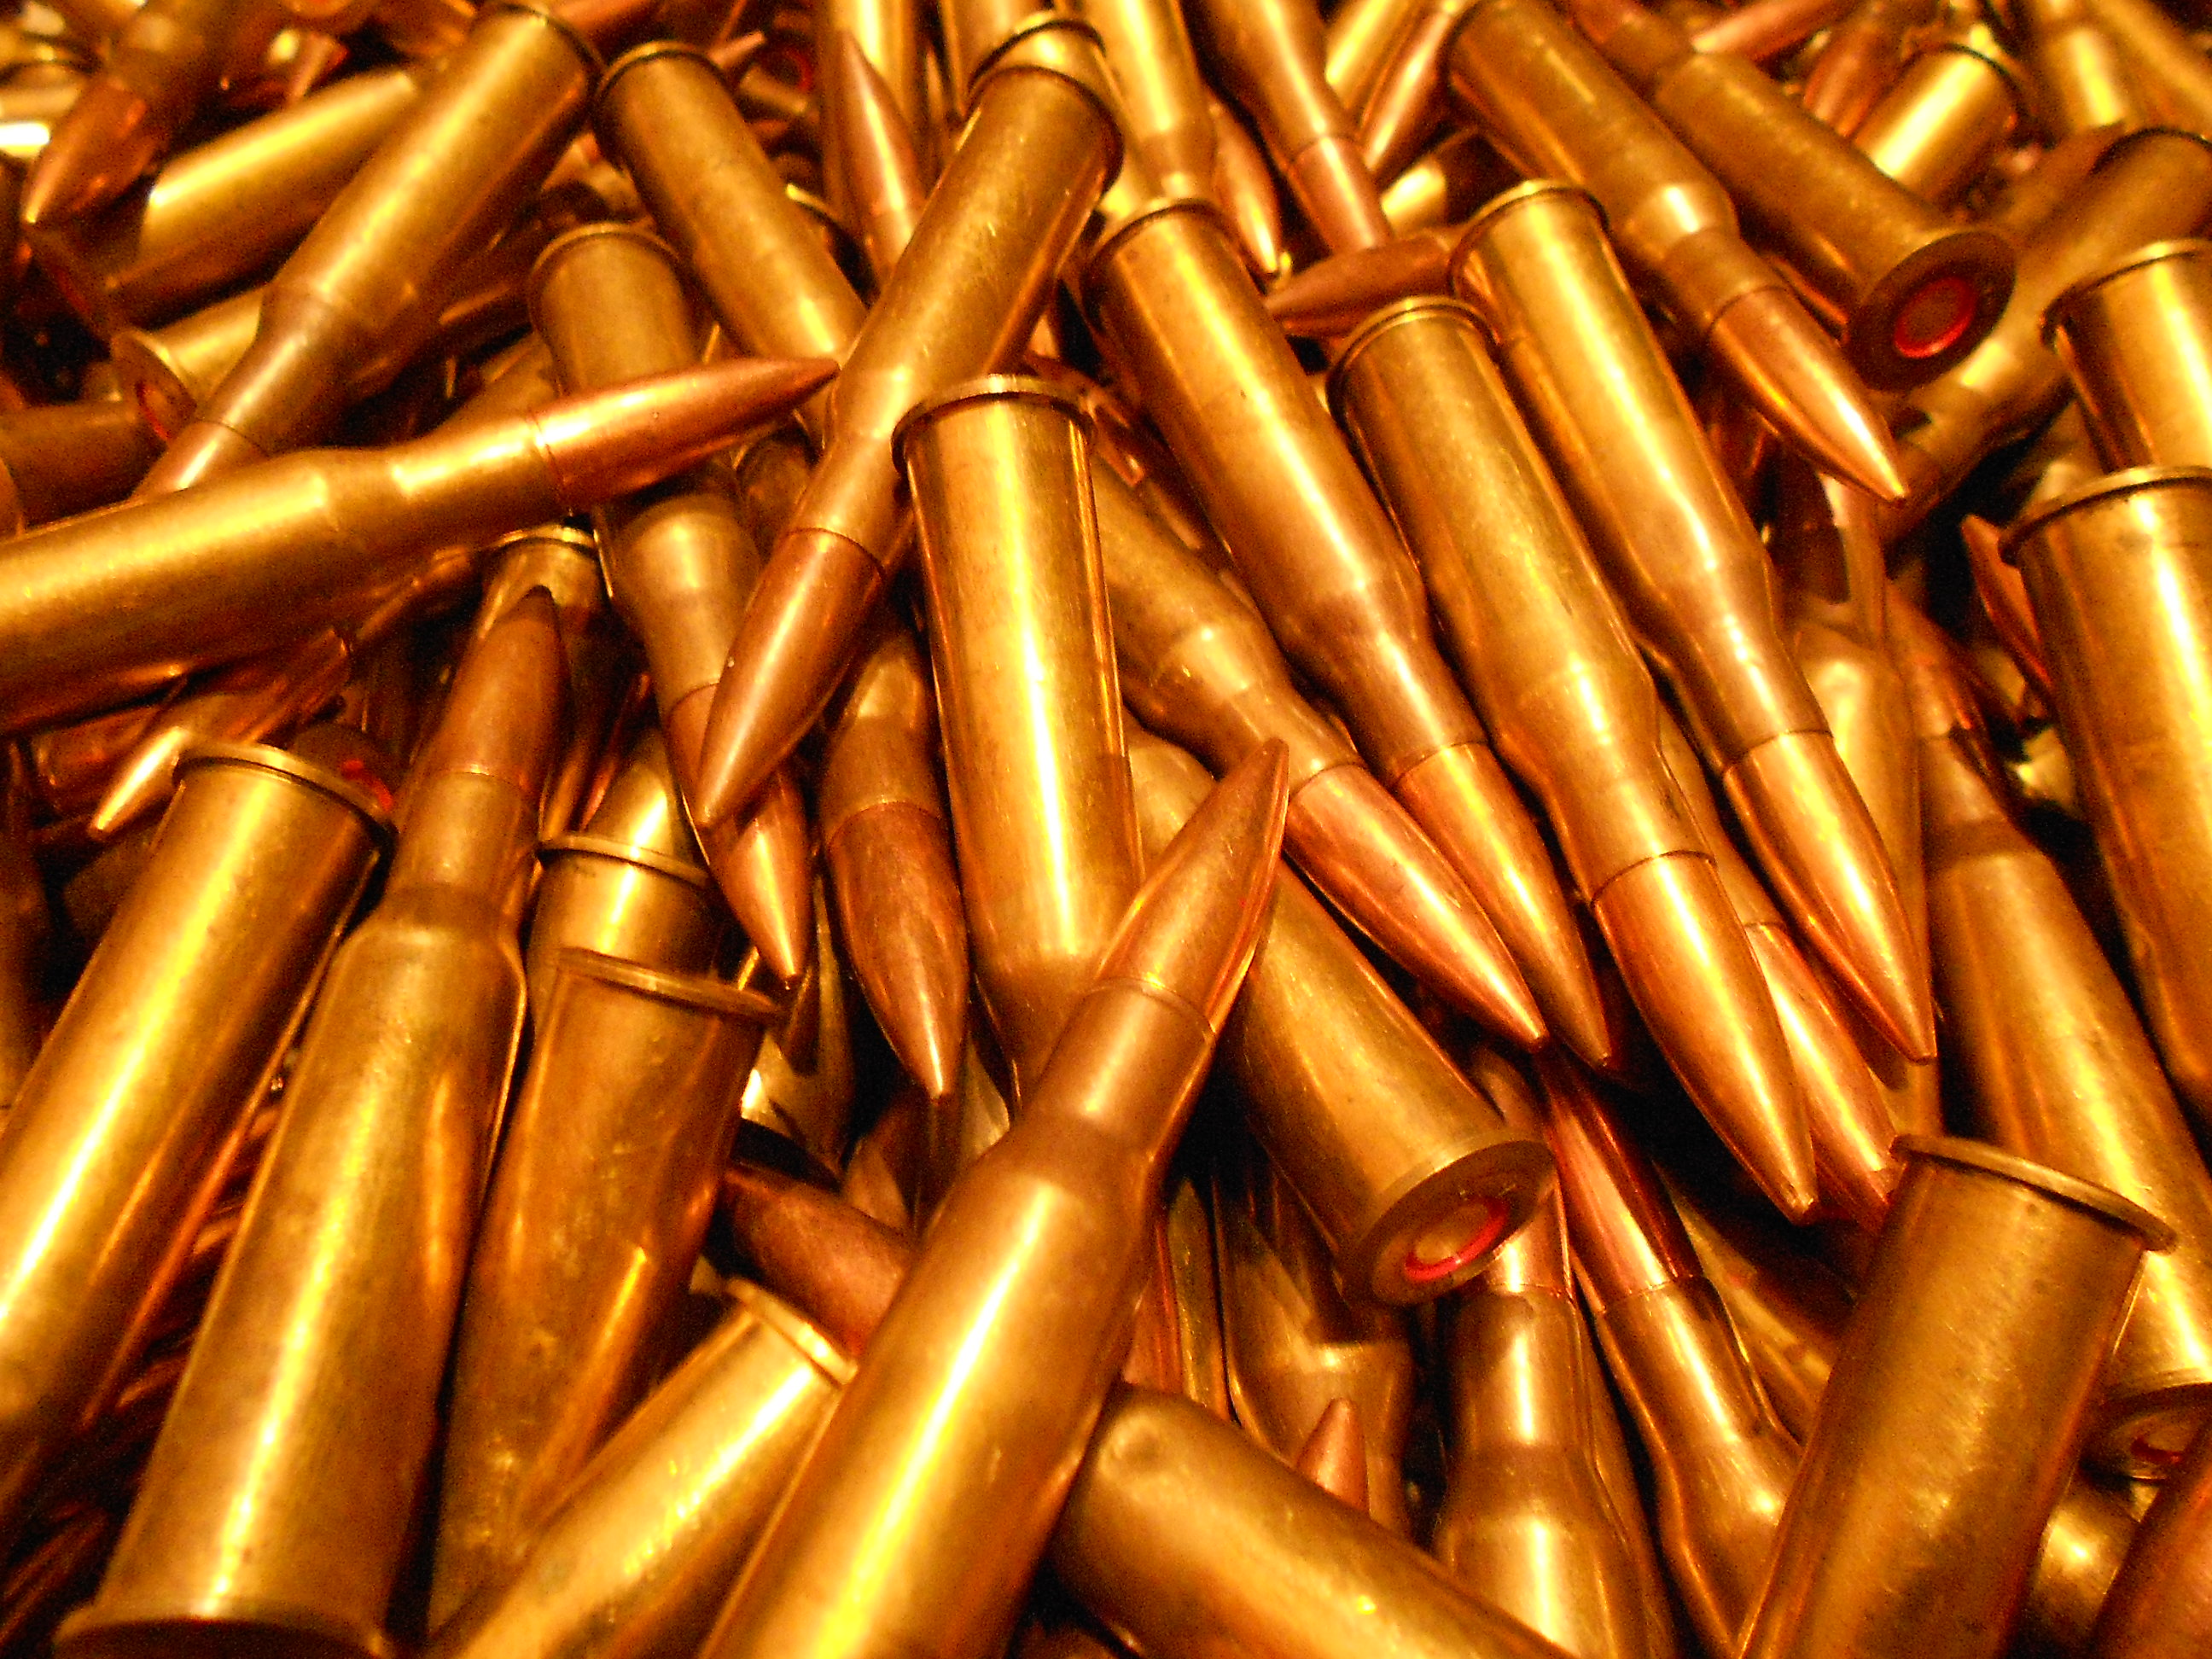 ammunition, bullets - desktop wallpaper